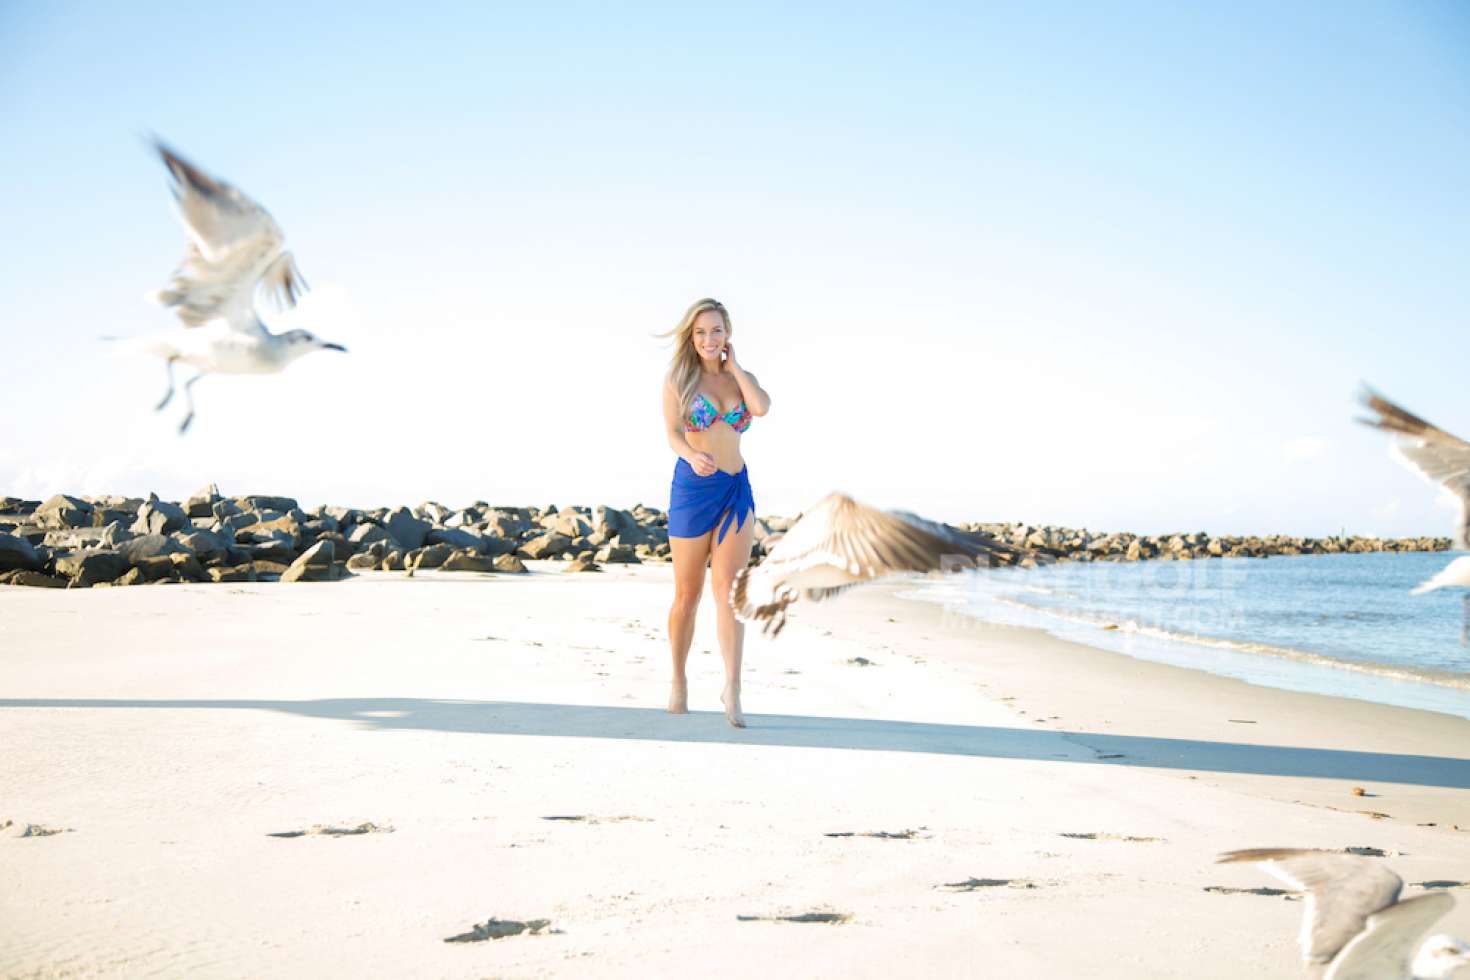 Paige Spiranac - PlayGolfMyrtleBeach Shoot by Scott Smallin in Sunset Beach. 